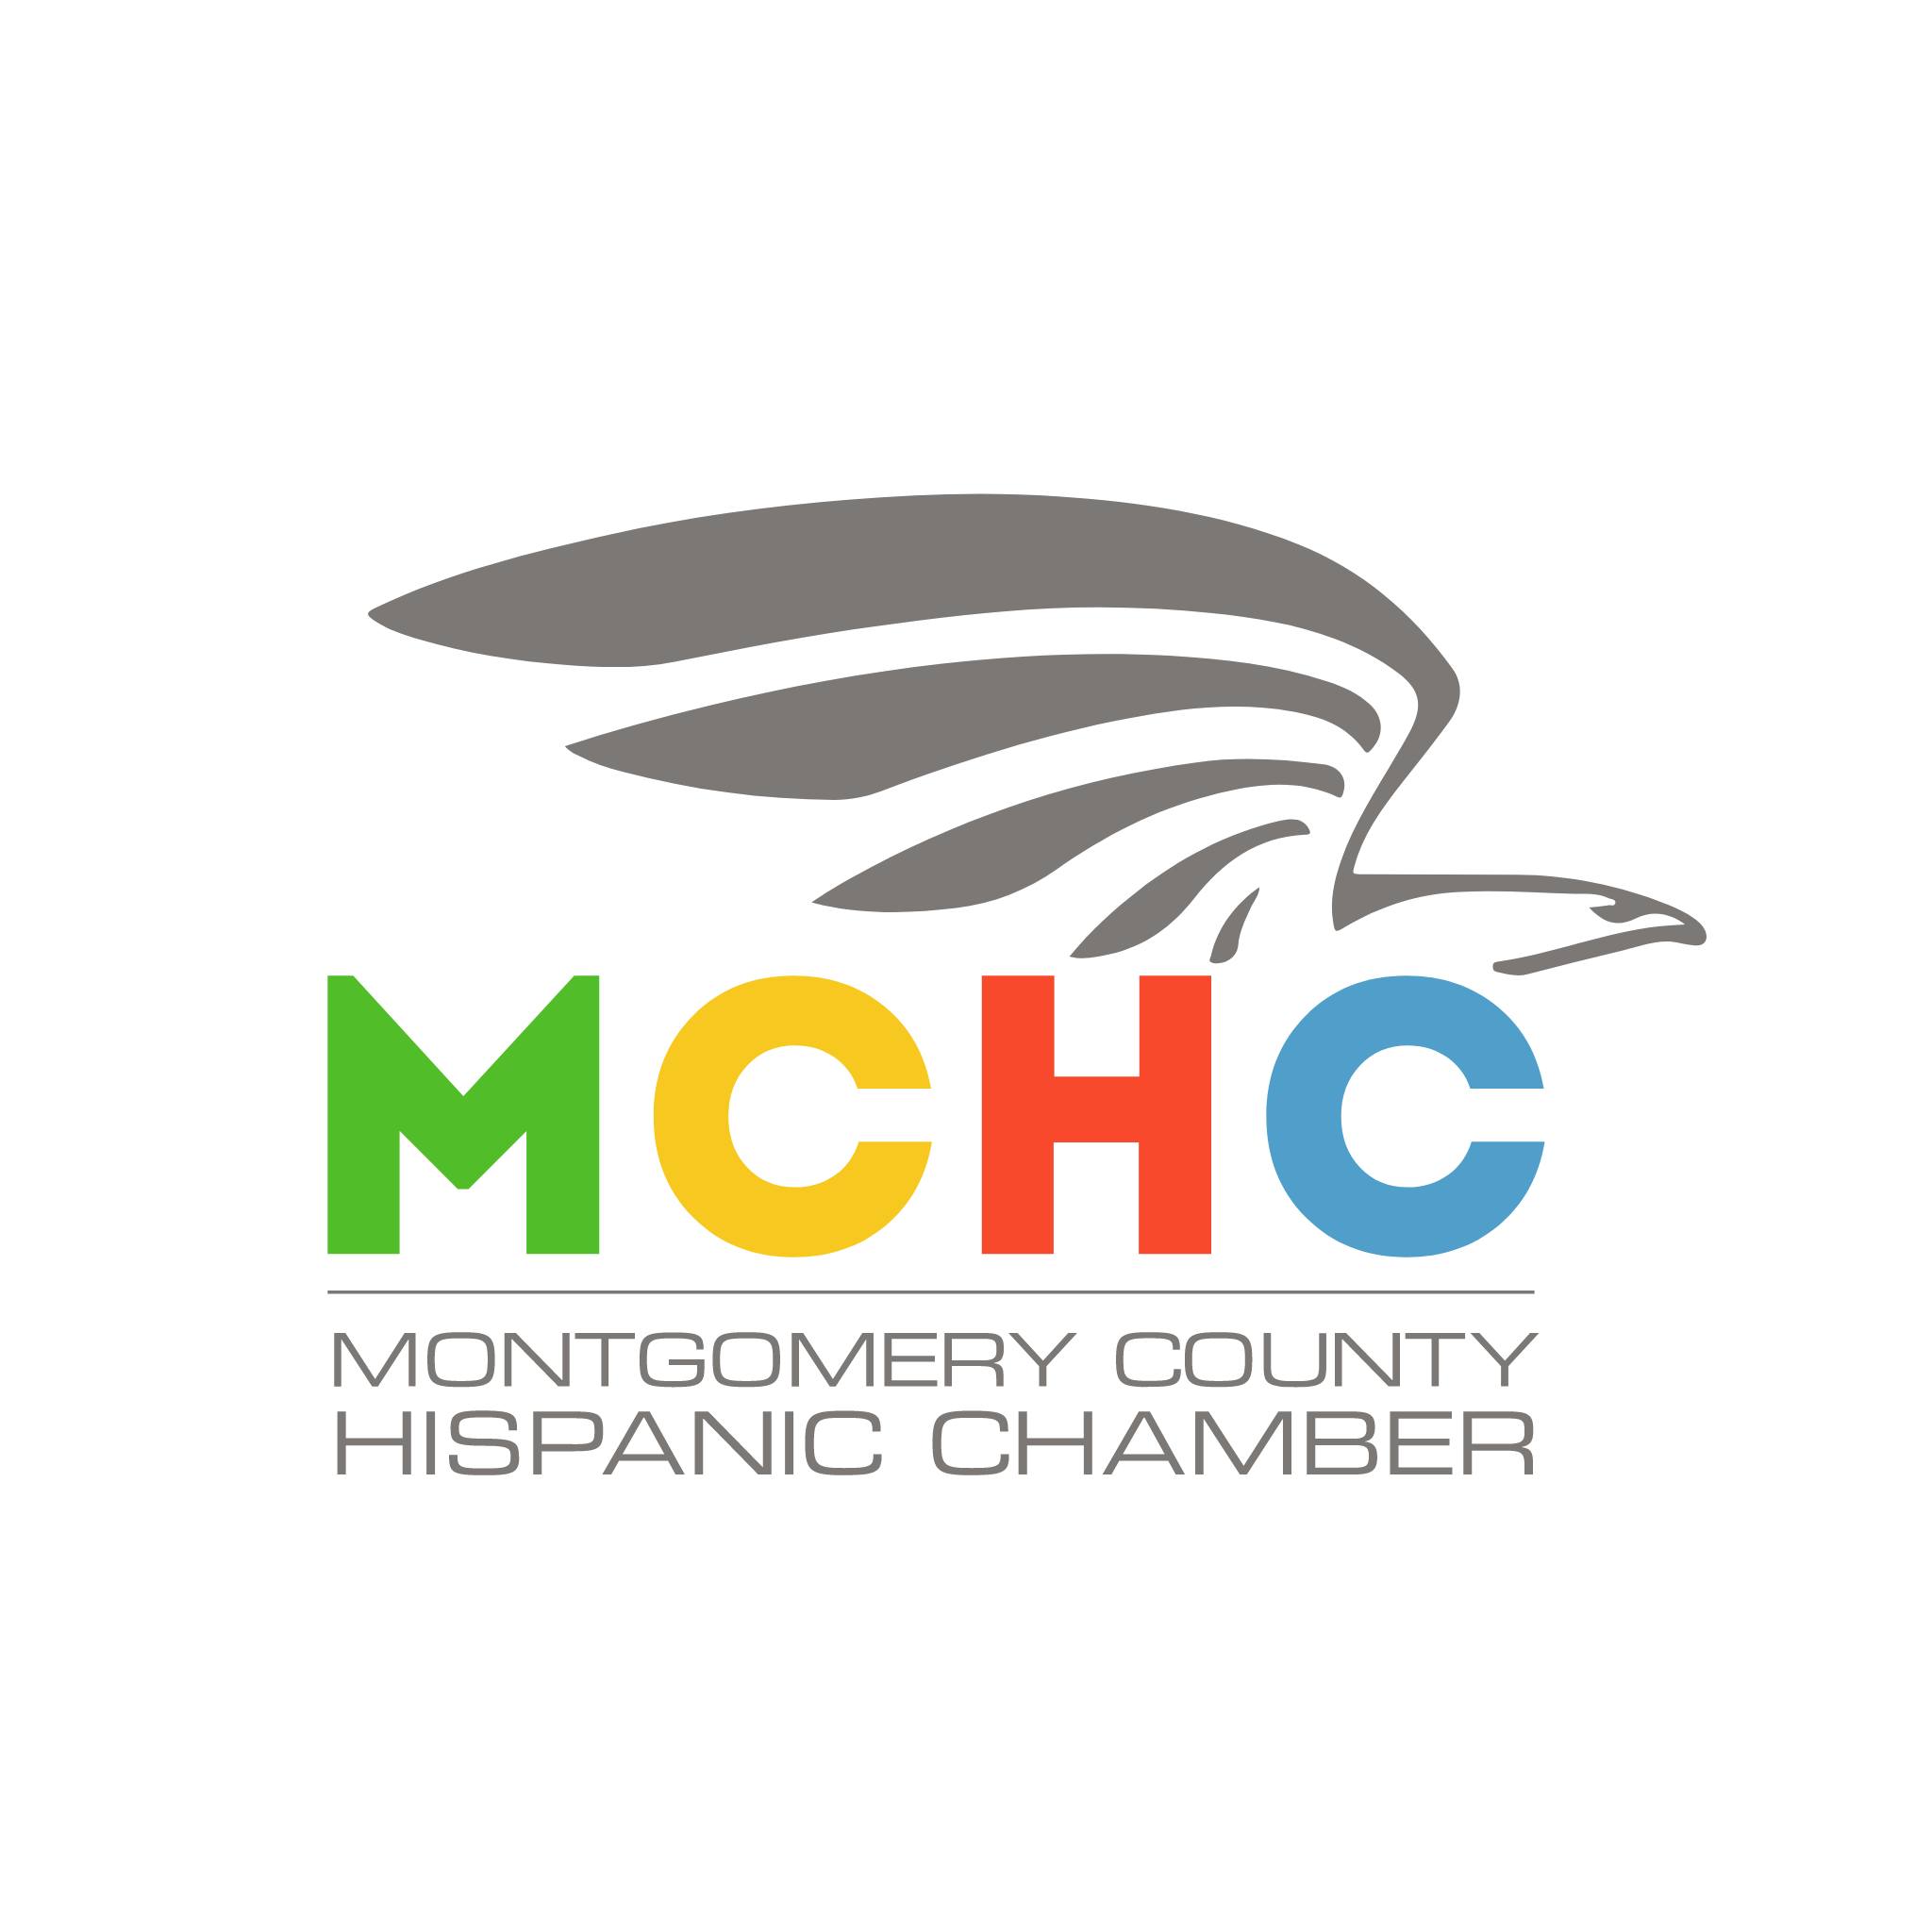 MCHC Montgomery County Hispanic Chamber